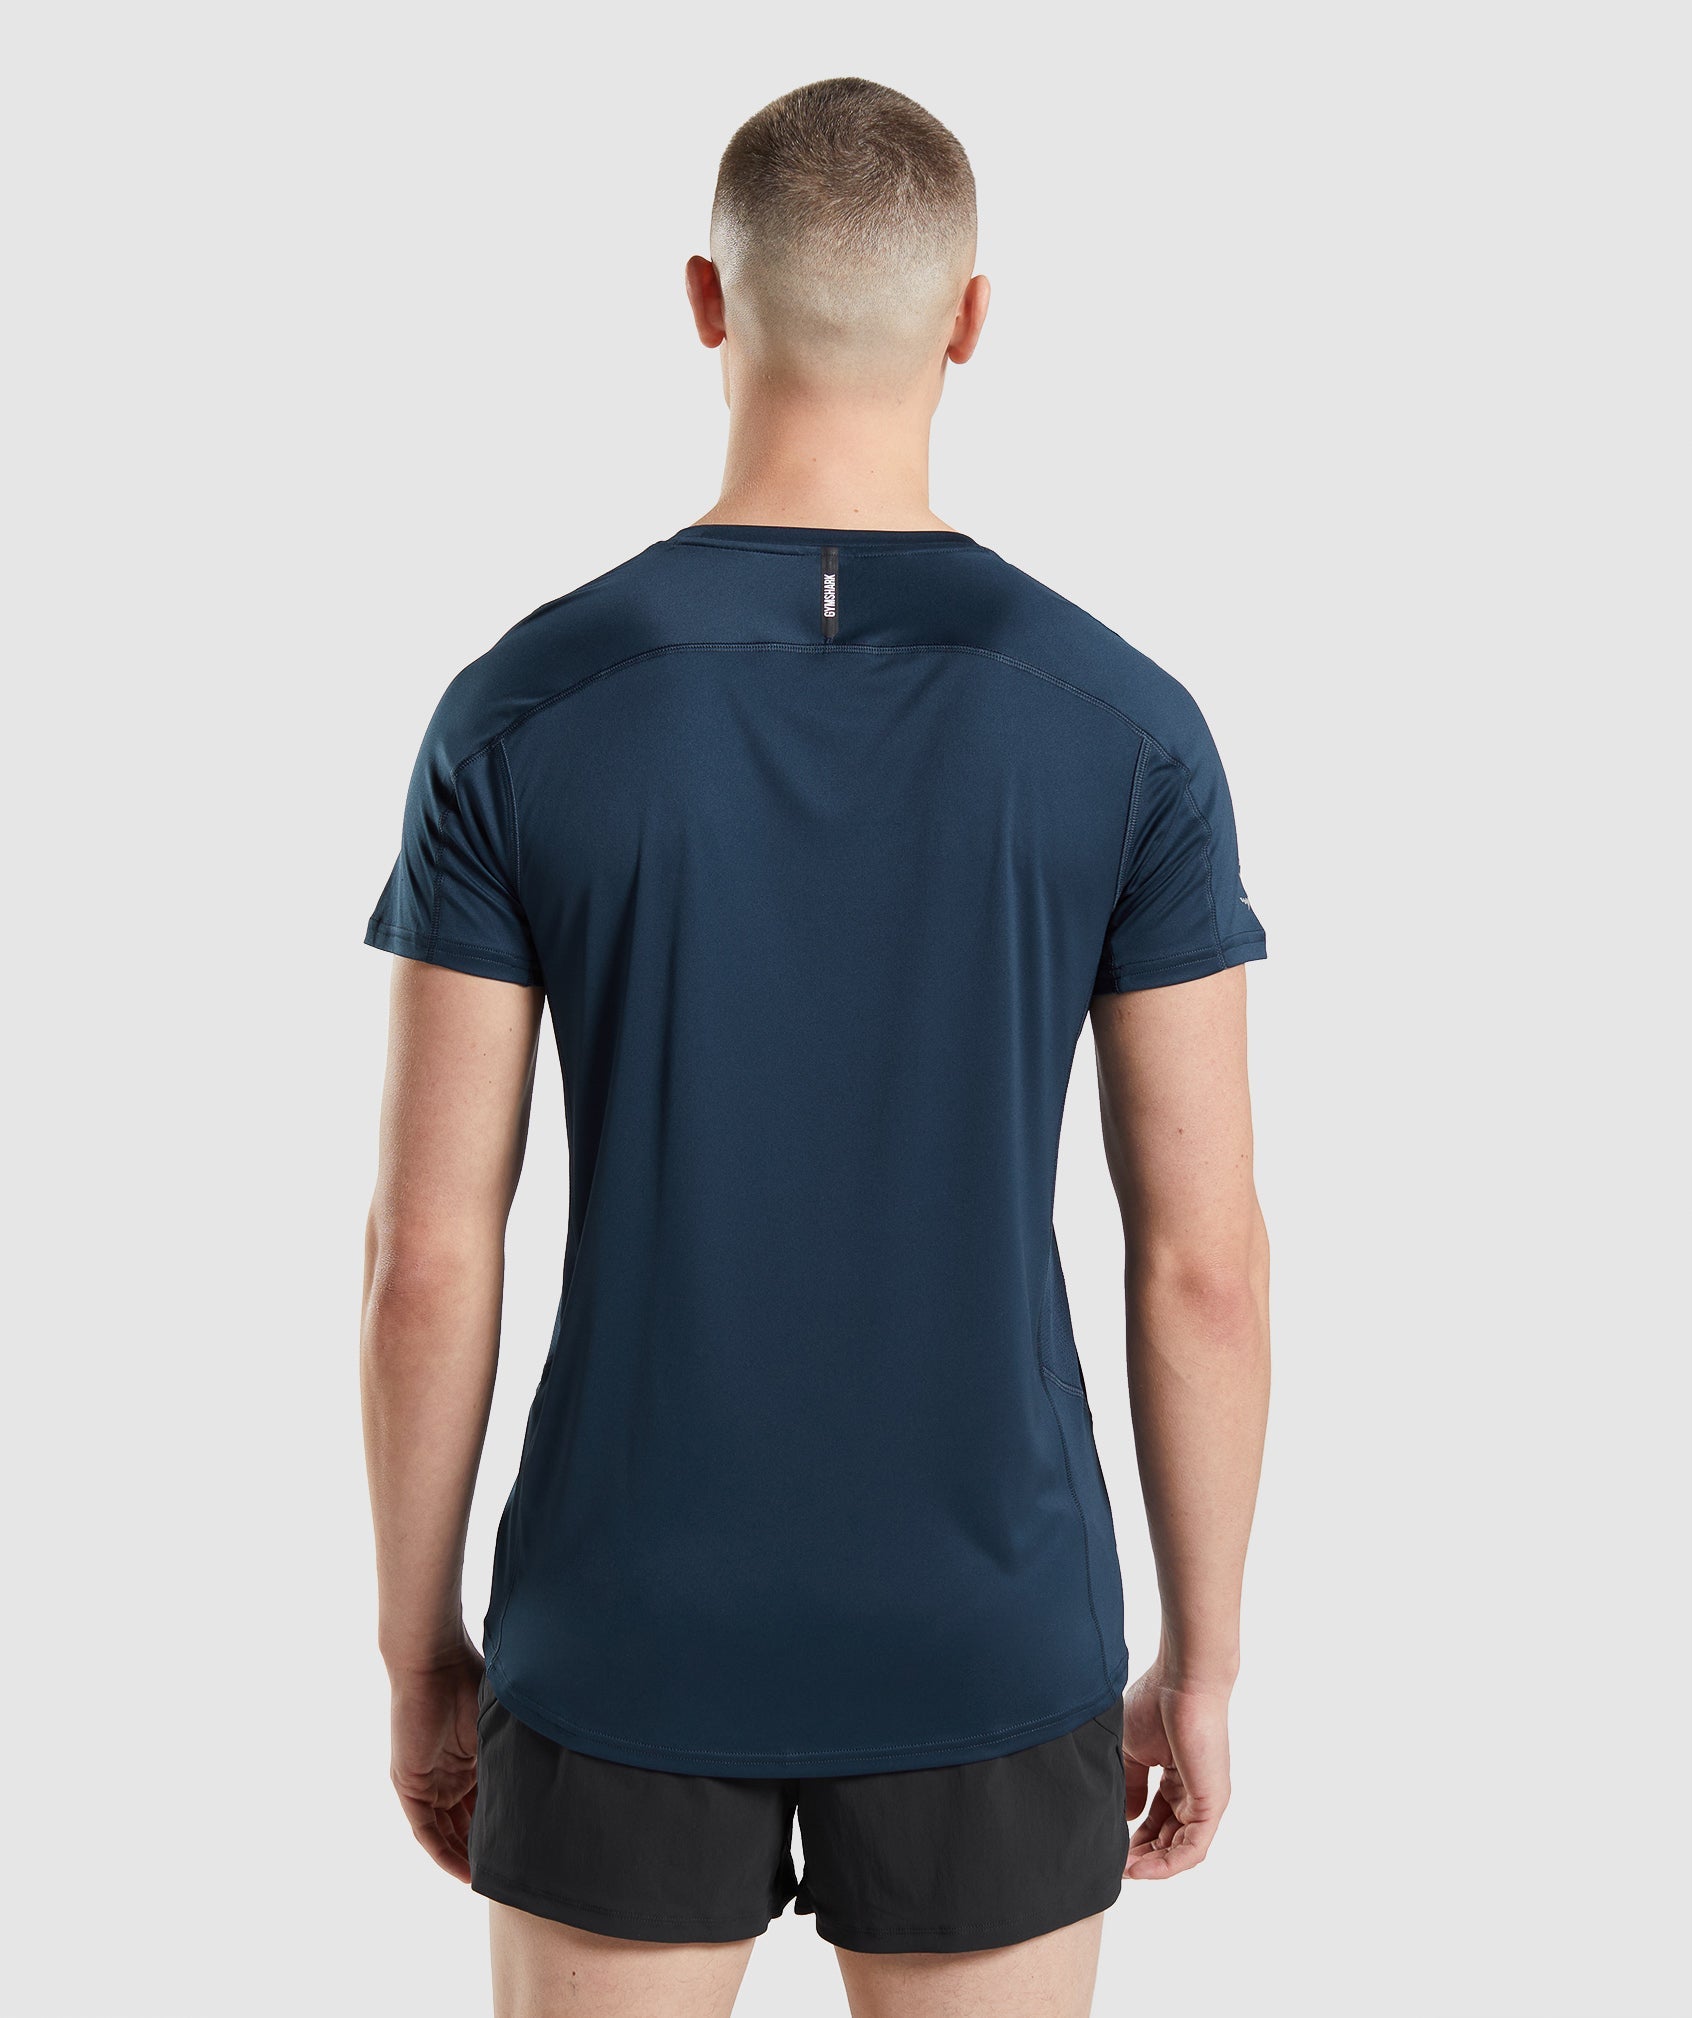 Speed Evolve T-Shirt in Navy